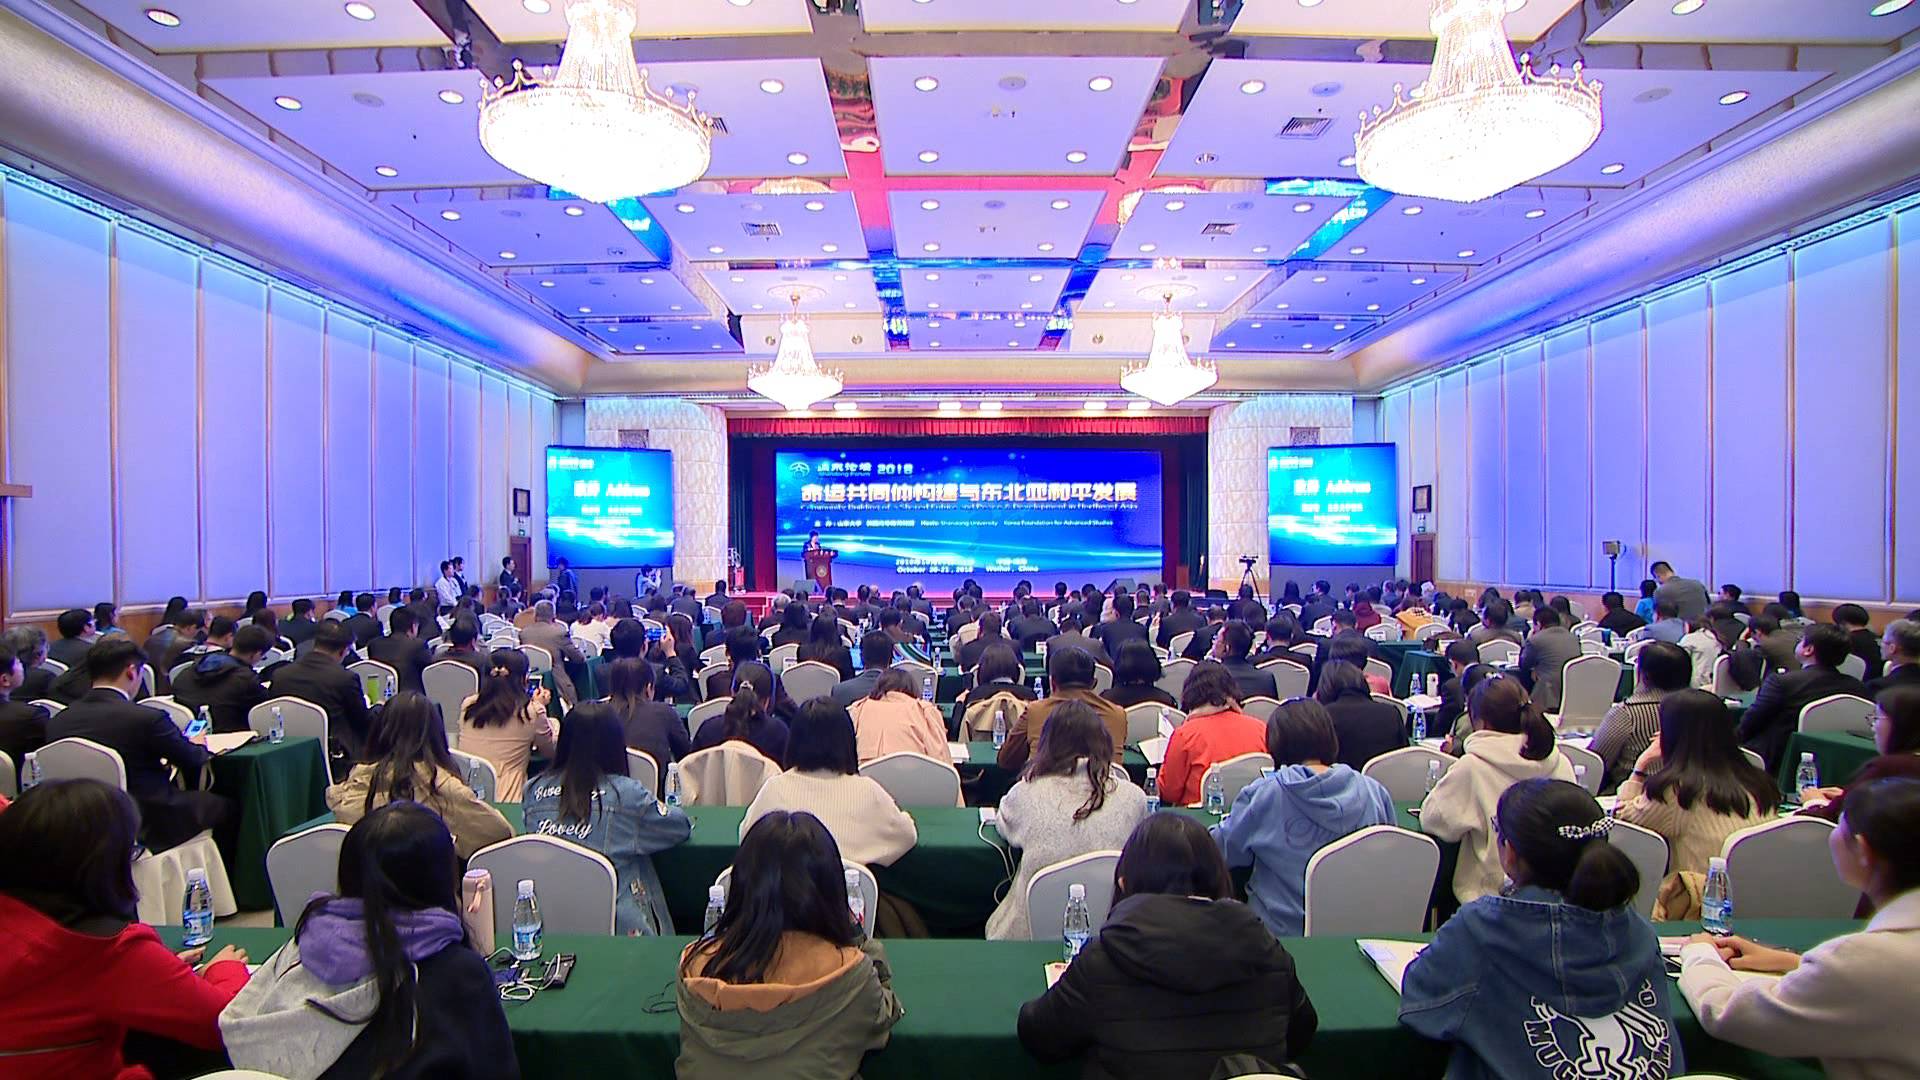 第二届山东论坛在威海举行 寻求区域合作共识